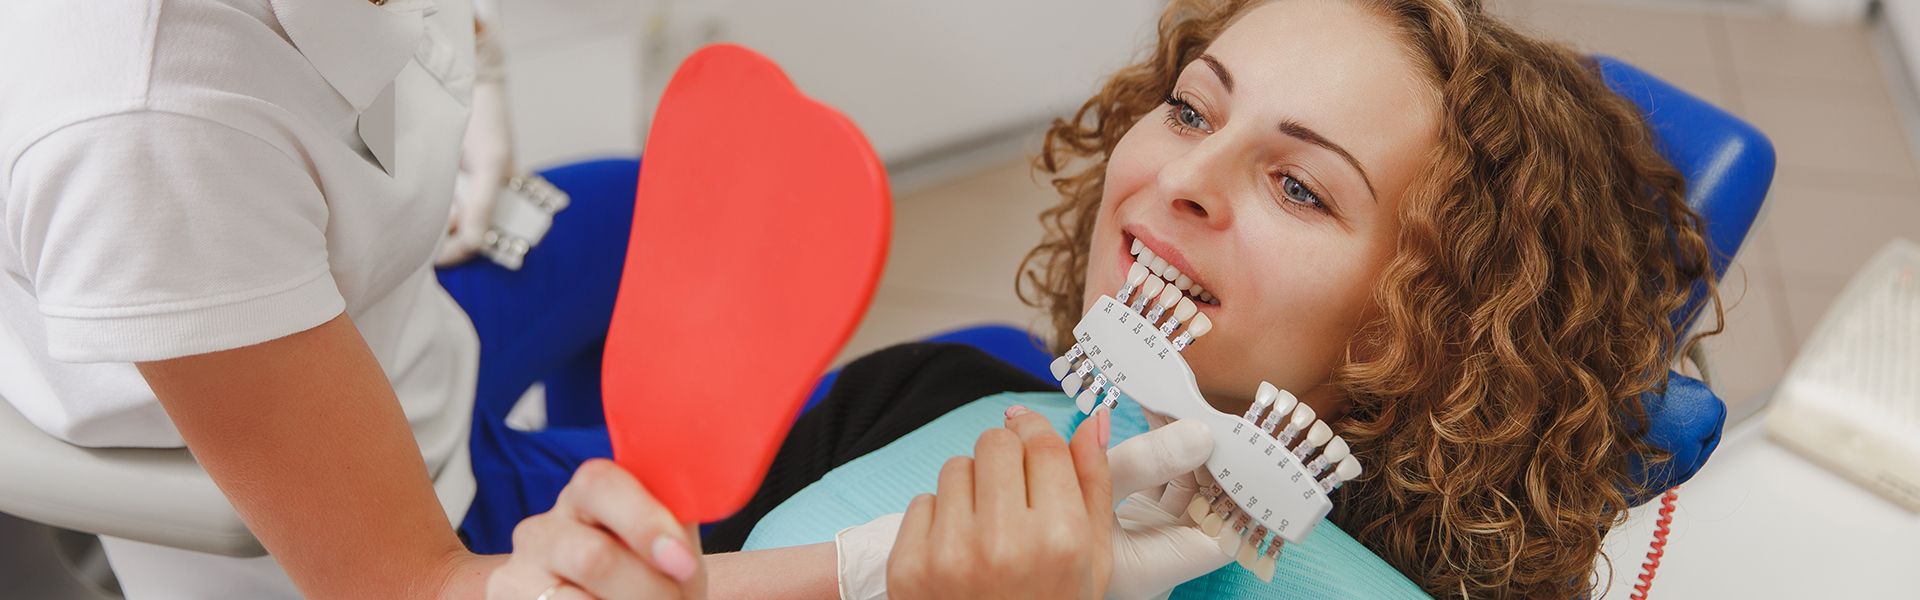 How Long Do Dental Veneers Last?